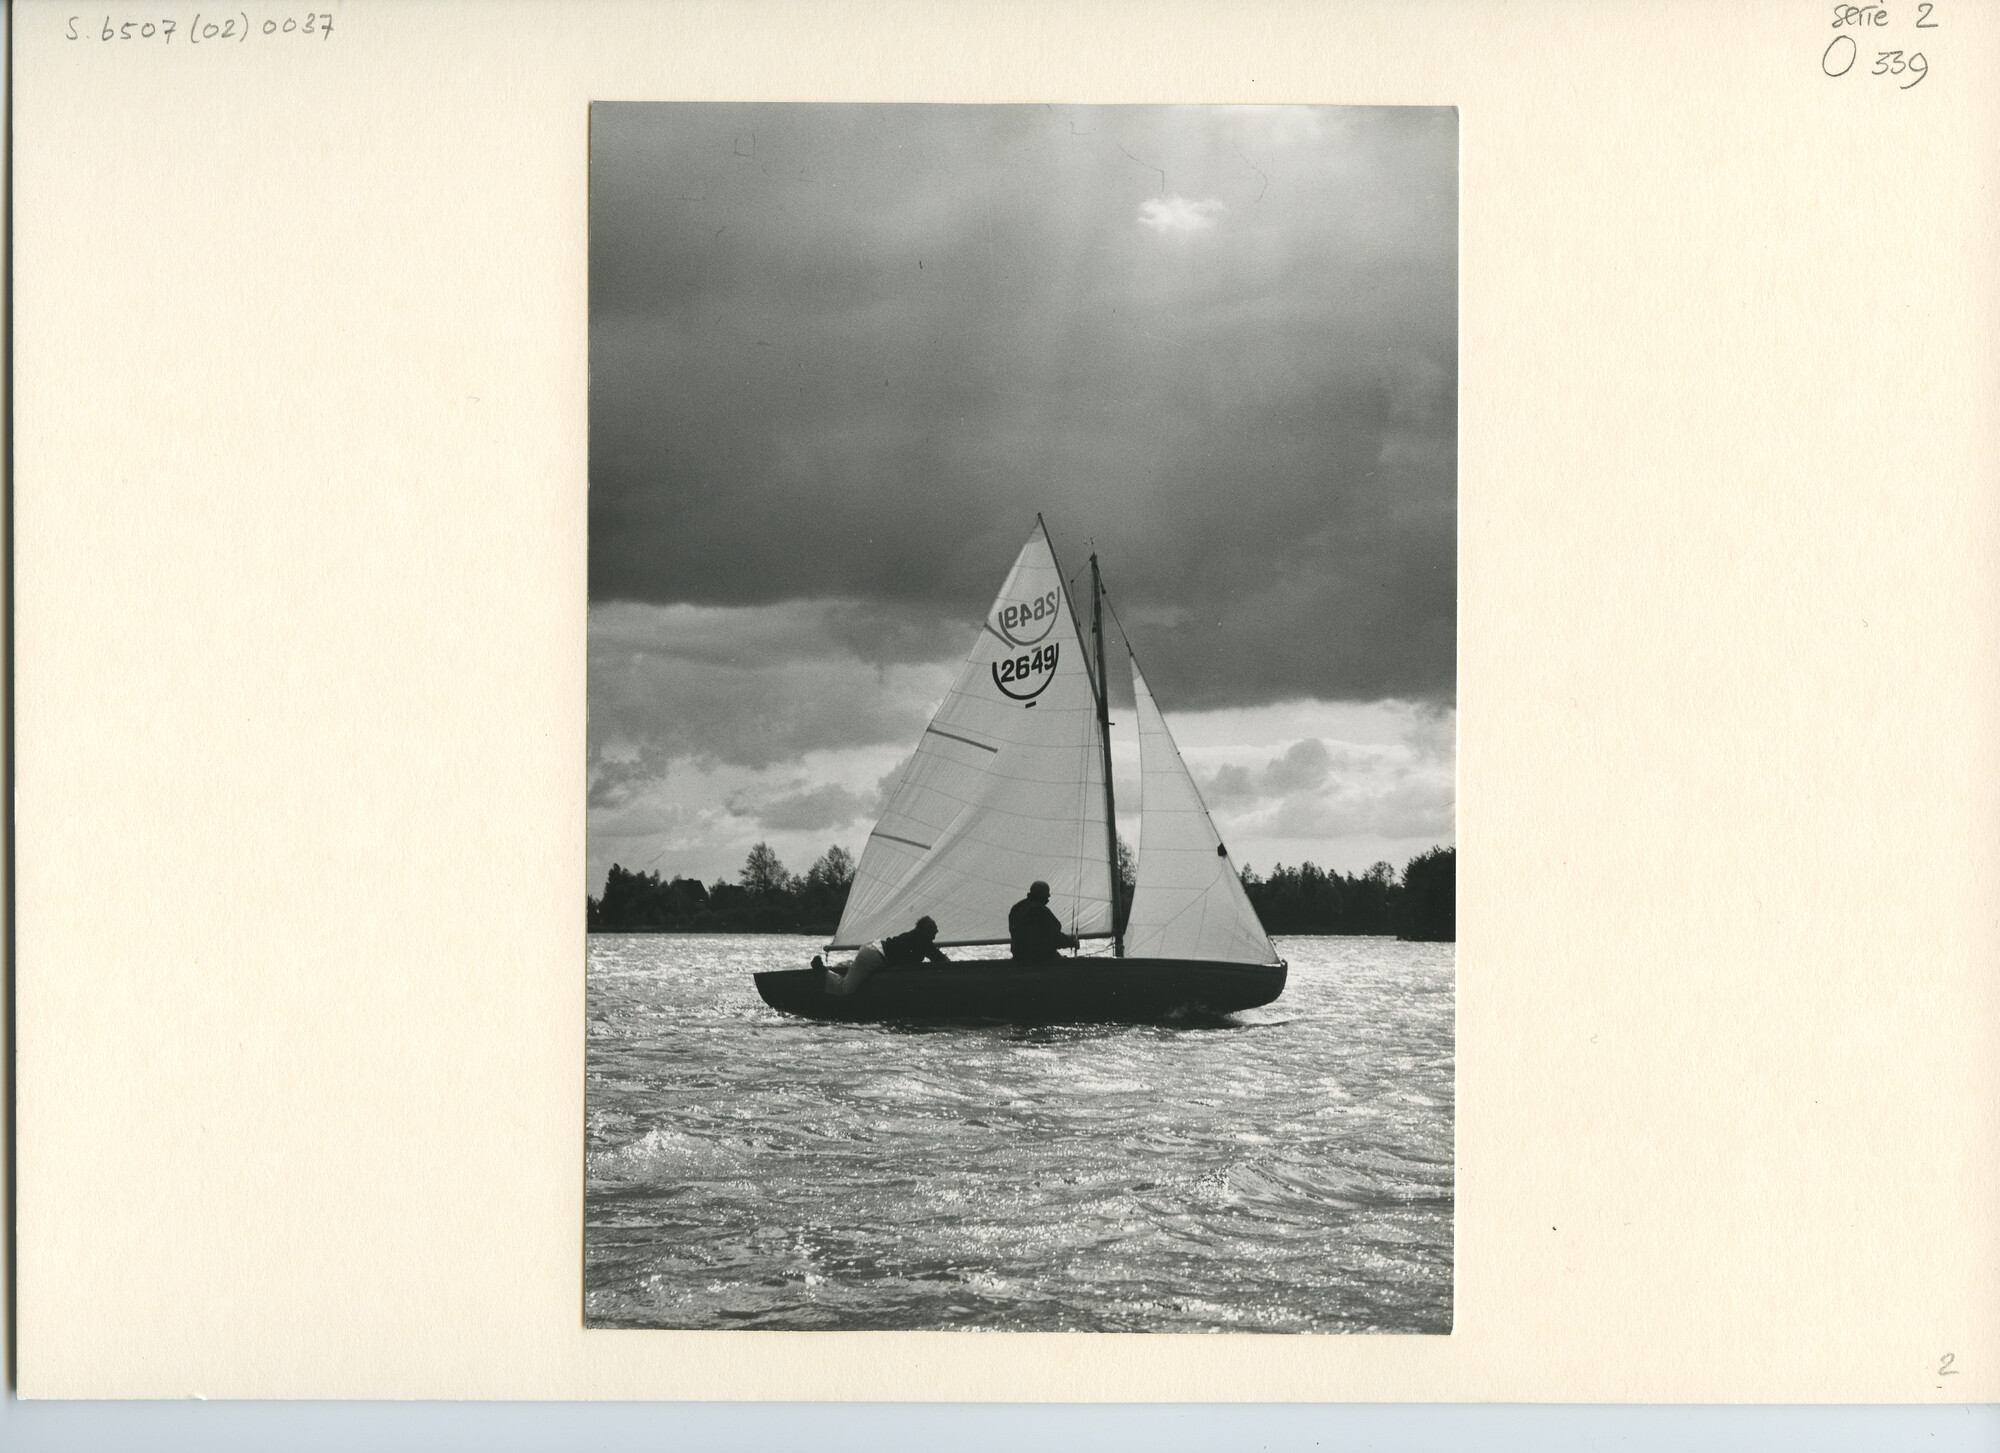 S.6507(02)0037.04; Zwart-wit foto van de 16m² klasse tijdens de Goudse Zeilweek 1961; foto